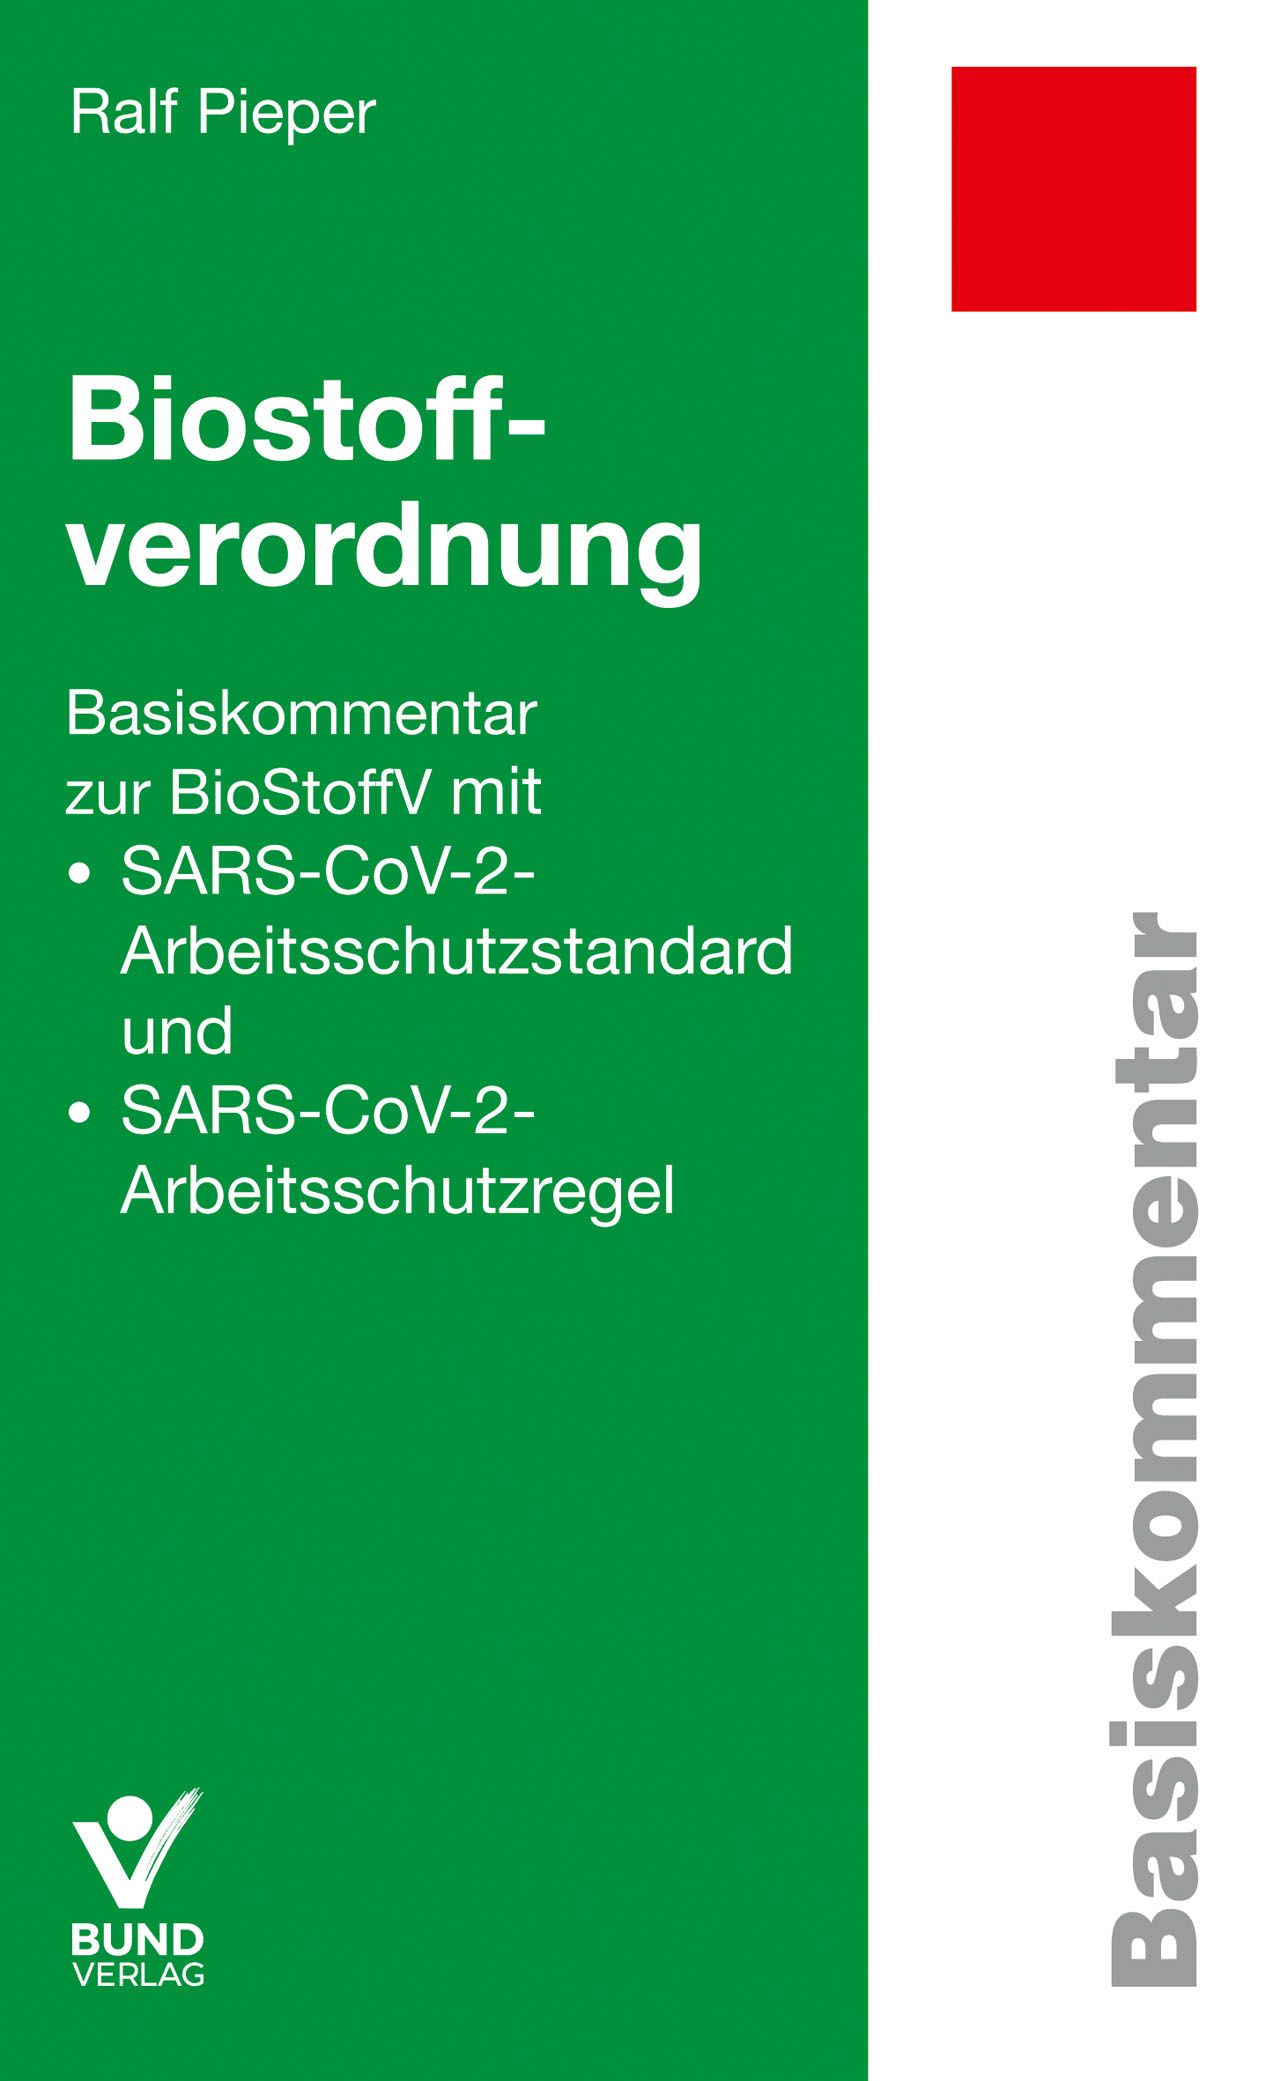 Biostoffverordnung. Basiskommentar zur BioStoffV mit SARS-CoV-2-Arbeitsschutzstandard und SARS-CoV-2-Arbeitsschutzregel.